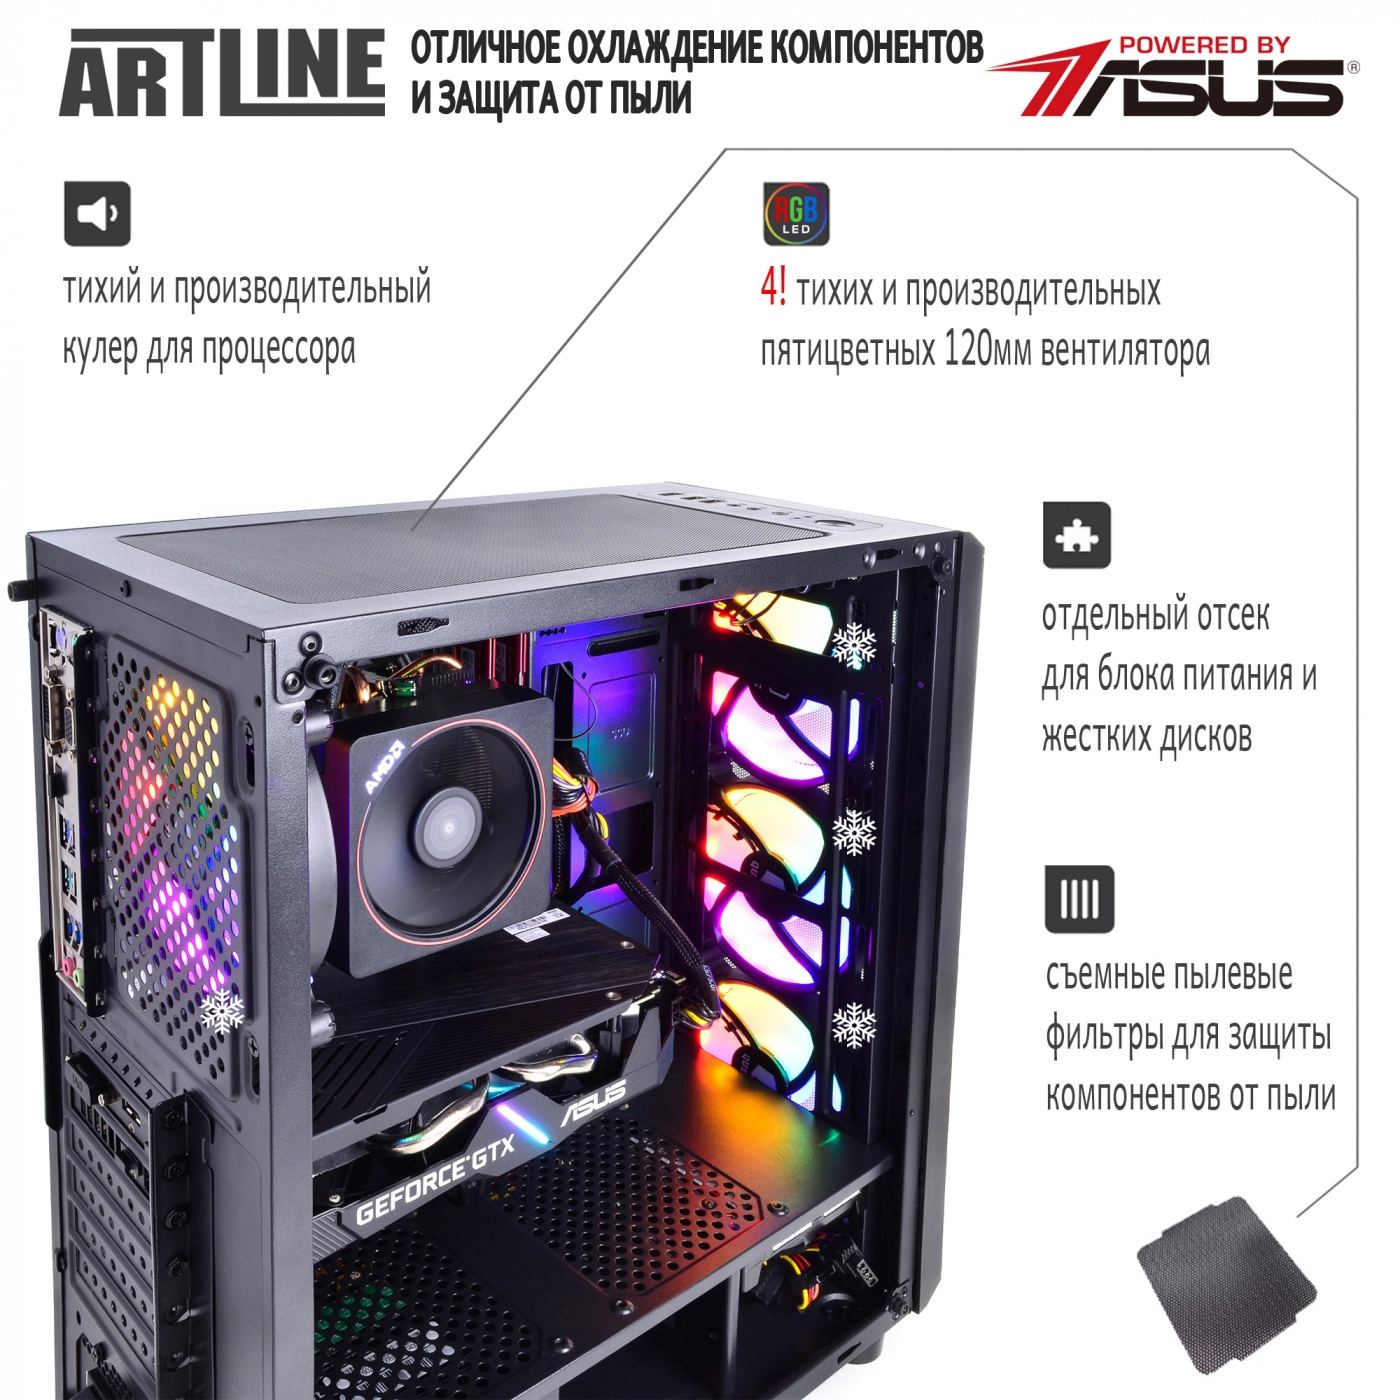 Купить Компьютер ARTLINE Gaming X66v14 - фото 3